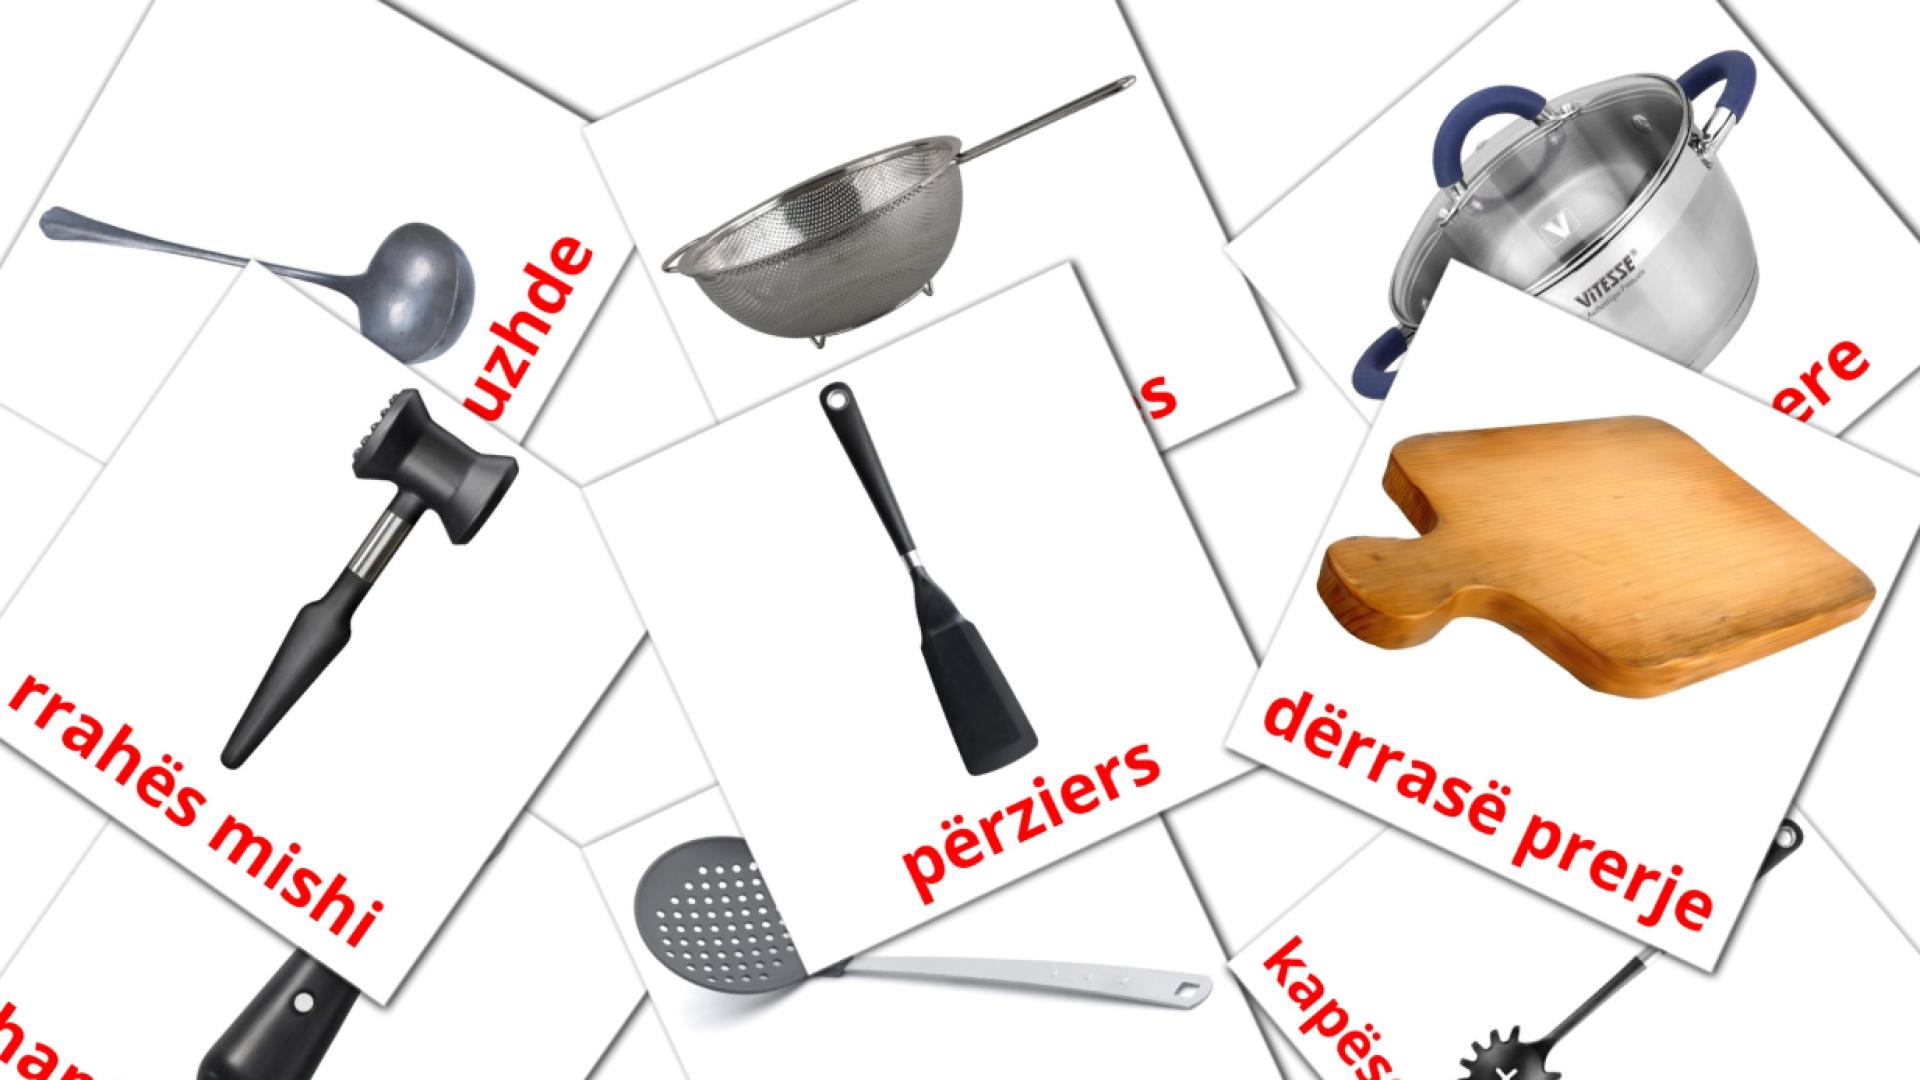 Utensili da cucina - Schede di vocabolario albanese